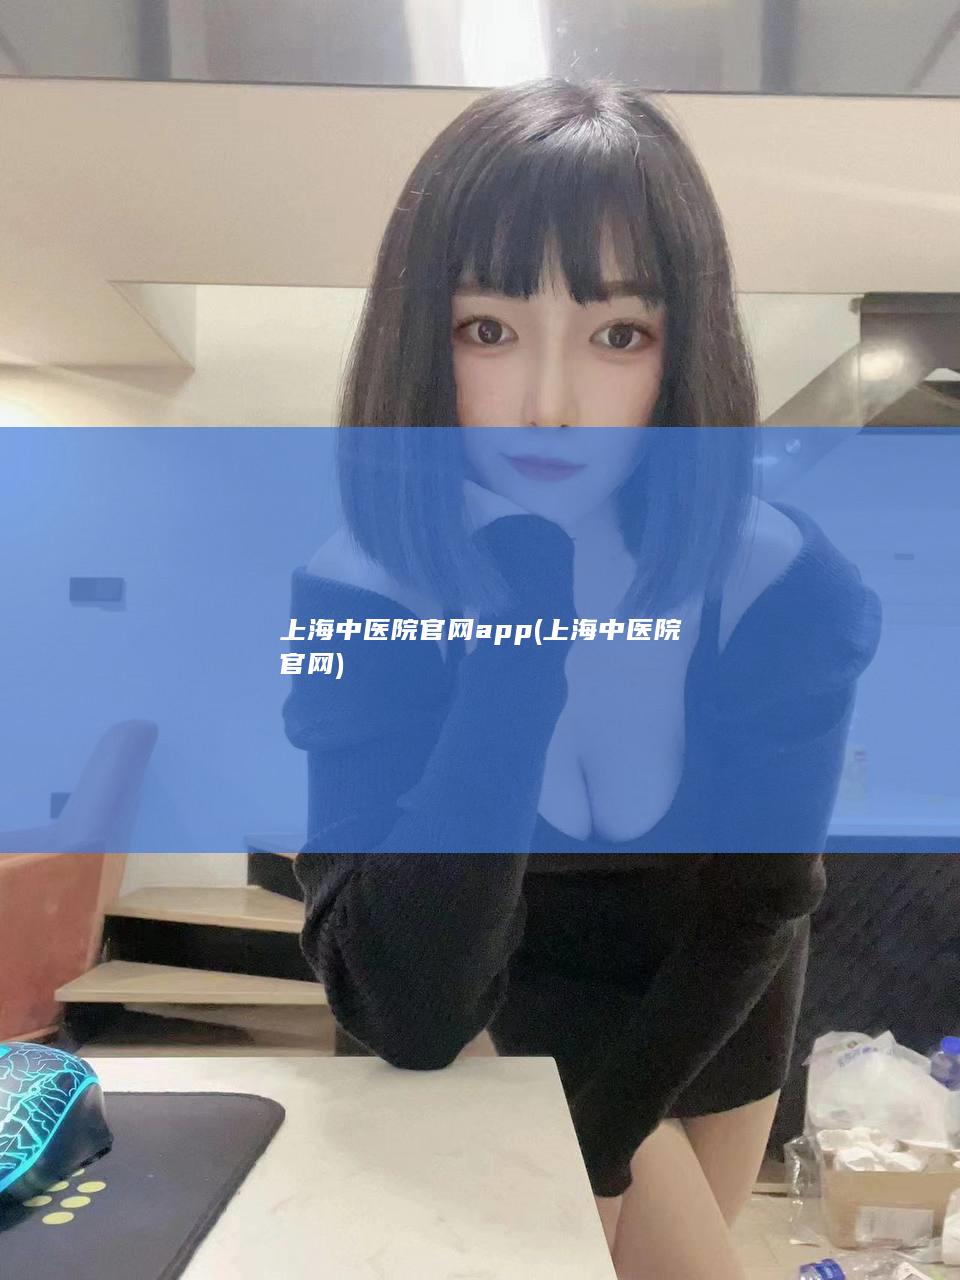 上海中医院官网app (上海中医院官网)